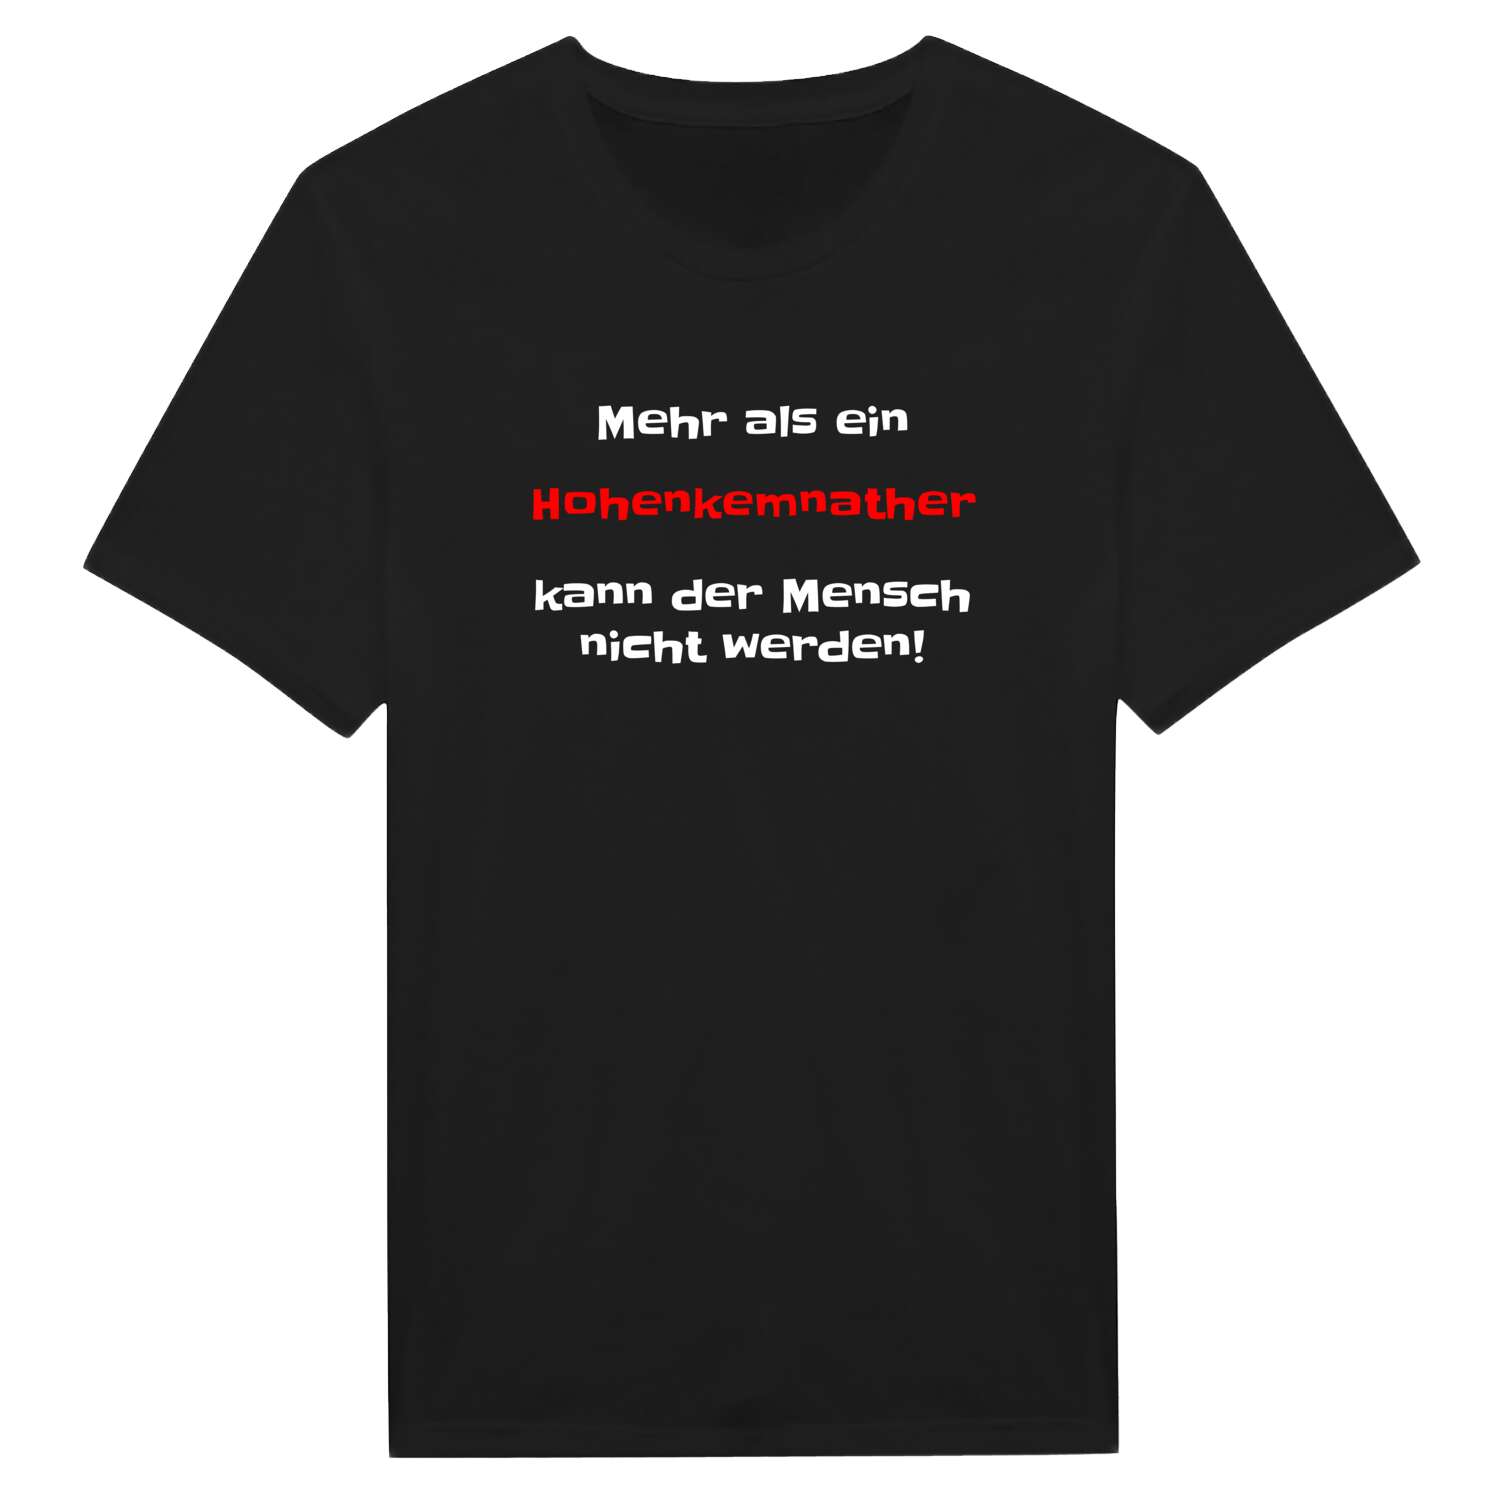 Hohenkemnath T-Shirt »Mehr als ein«